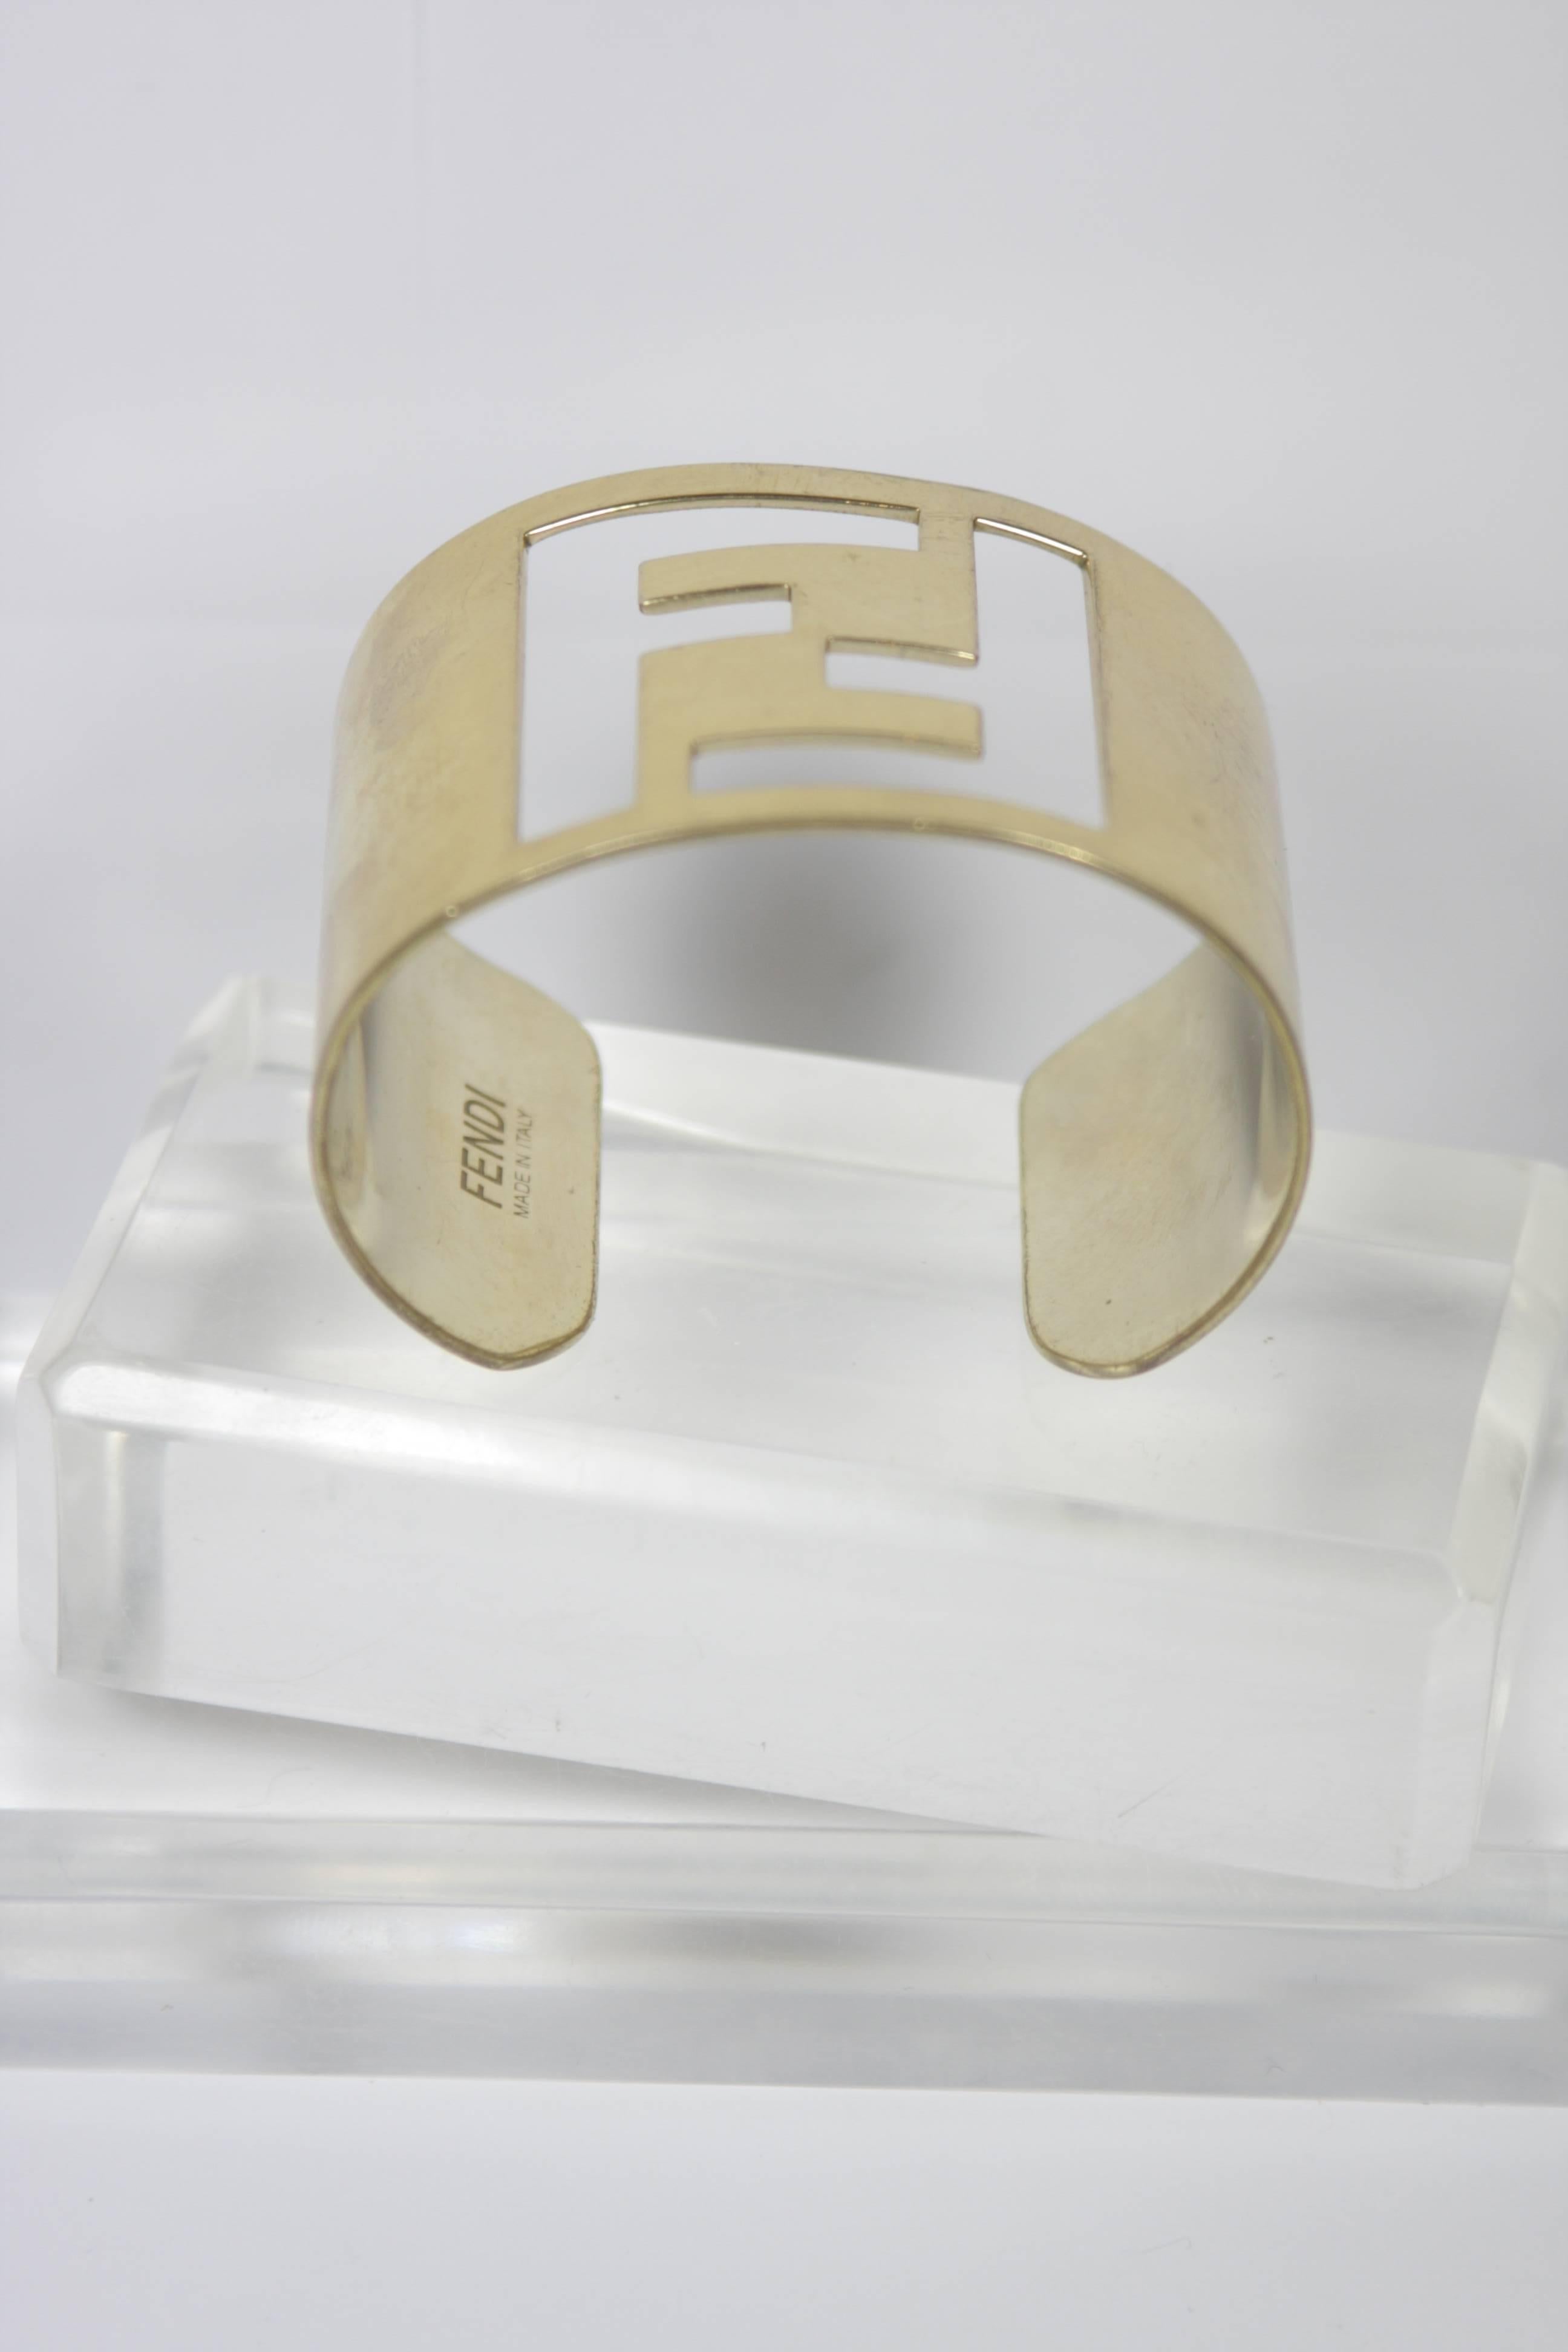 fendi gold cuff bracelet